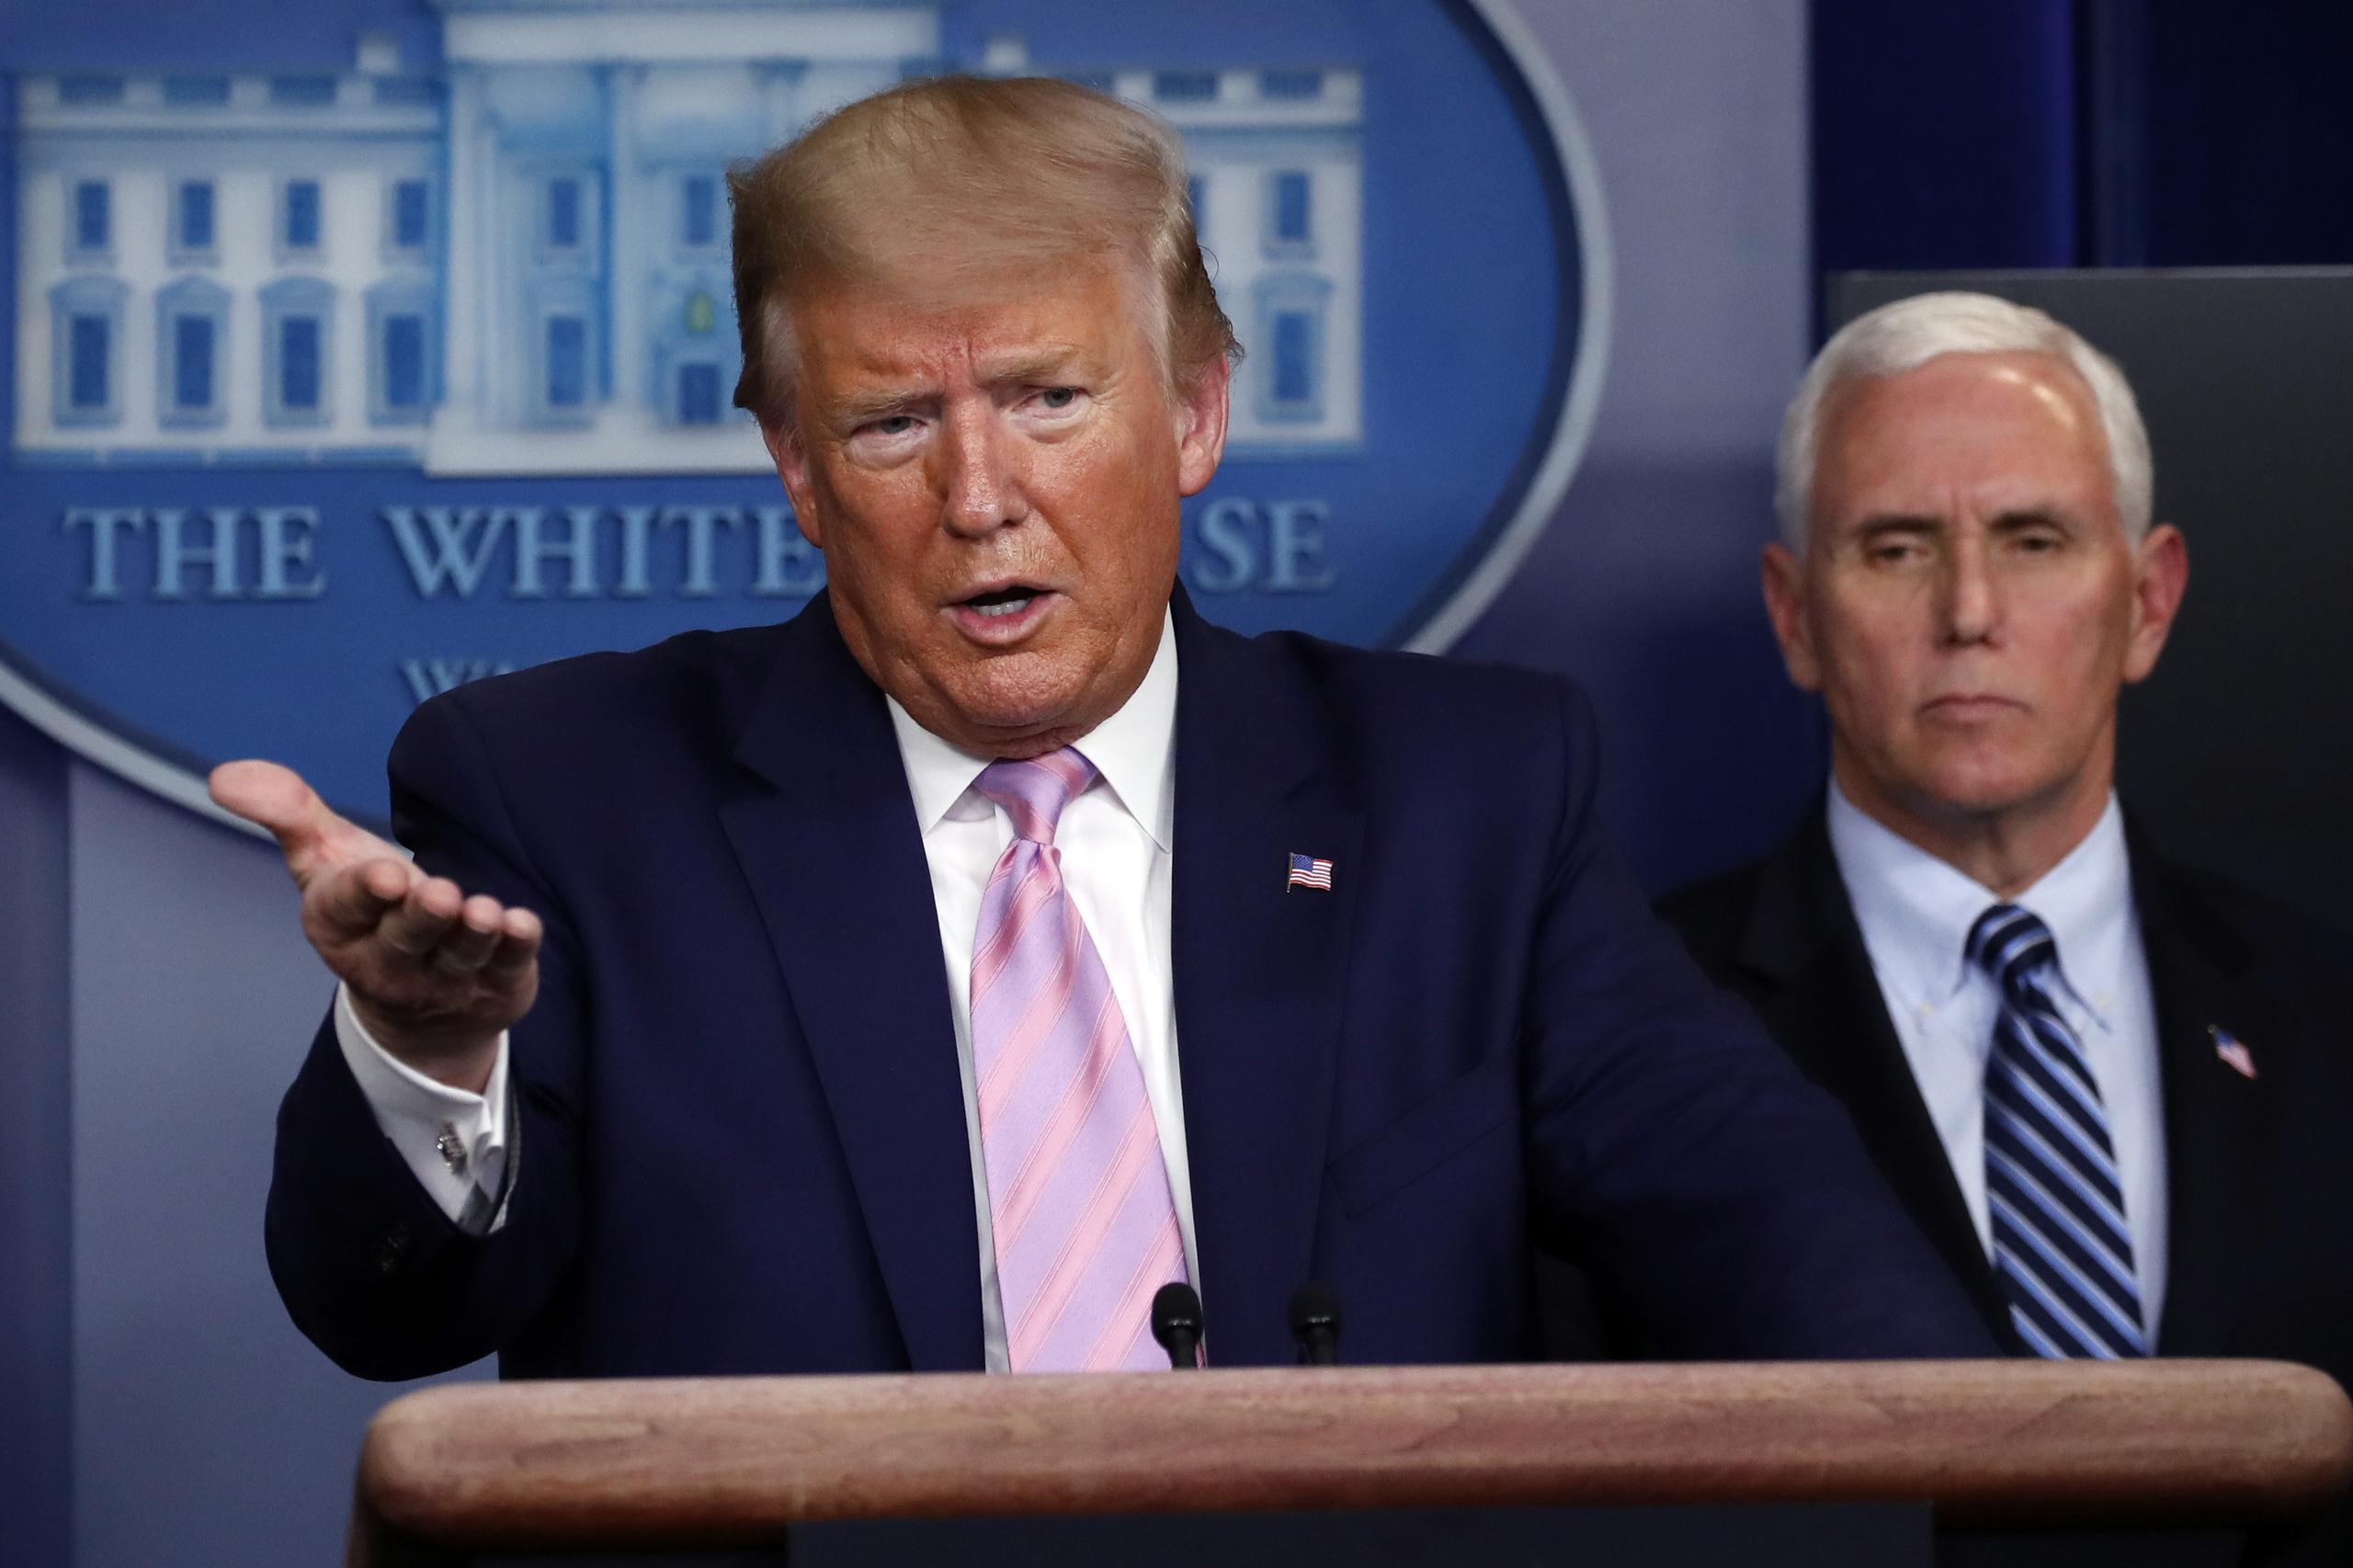 El presidente Donald Trump habla con los reporteros en la sala de prensa de la Casa Blanca, mientras el vicepresidente Mike Pence lo escucha